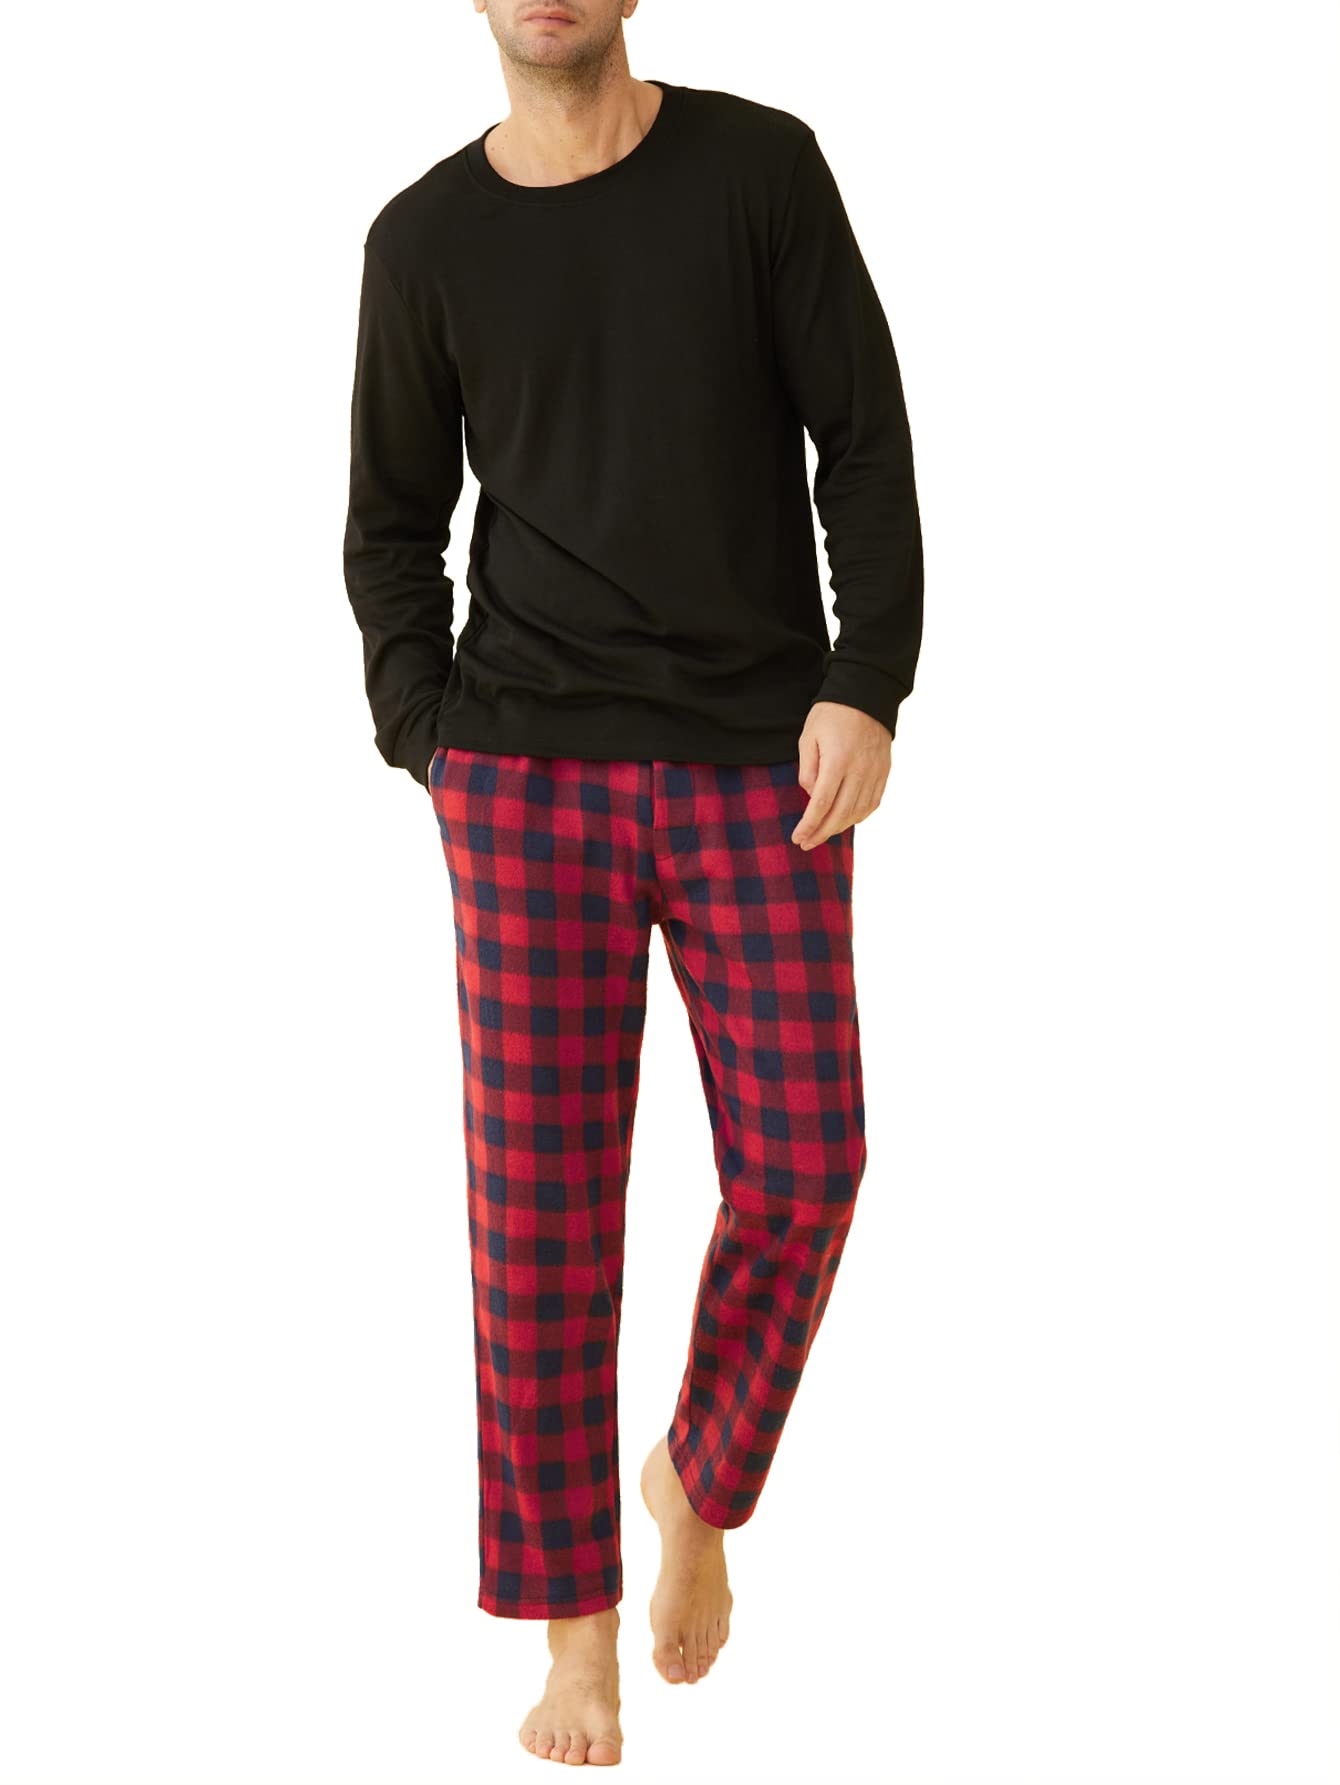 Black And Red Checked Fleece Pyjama Pants